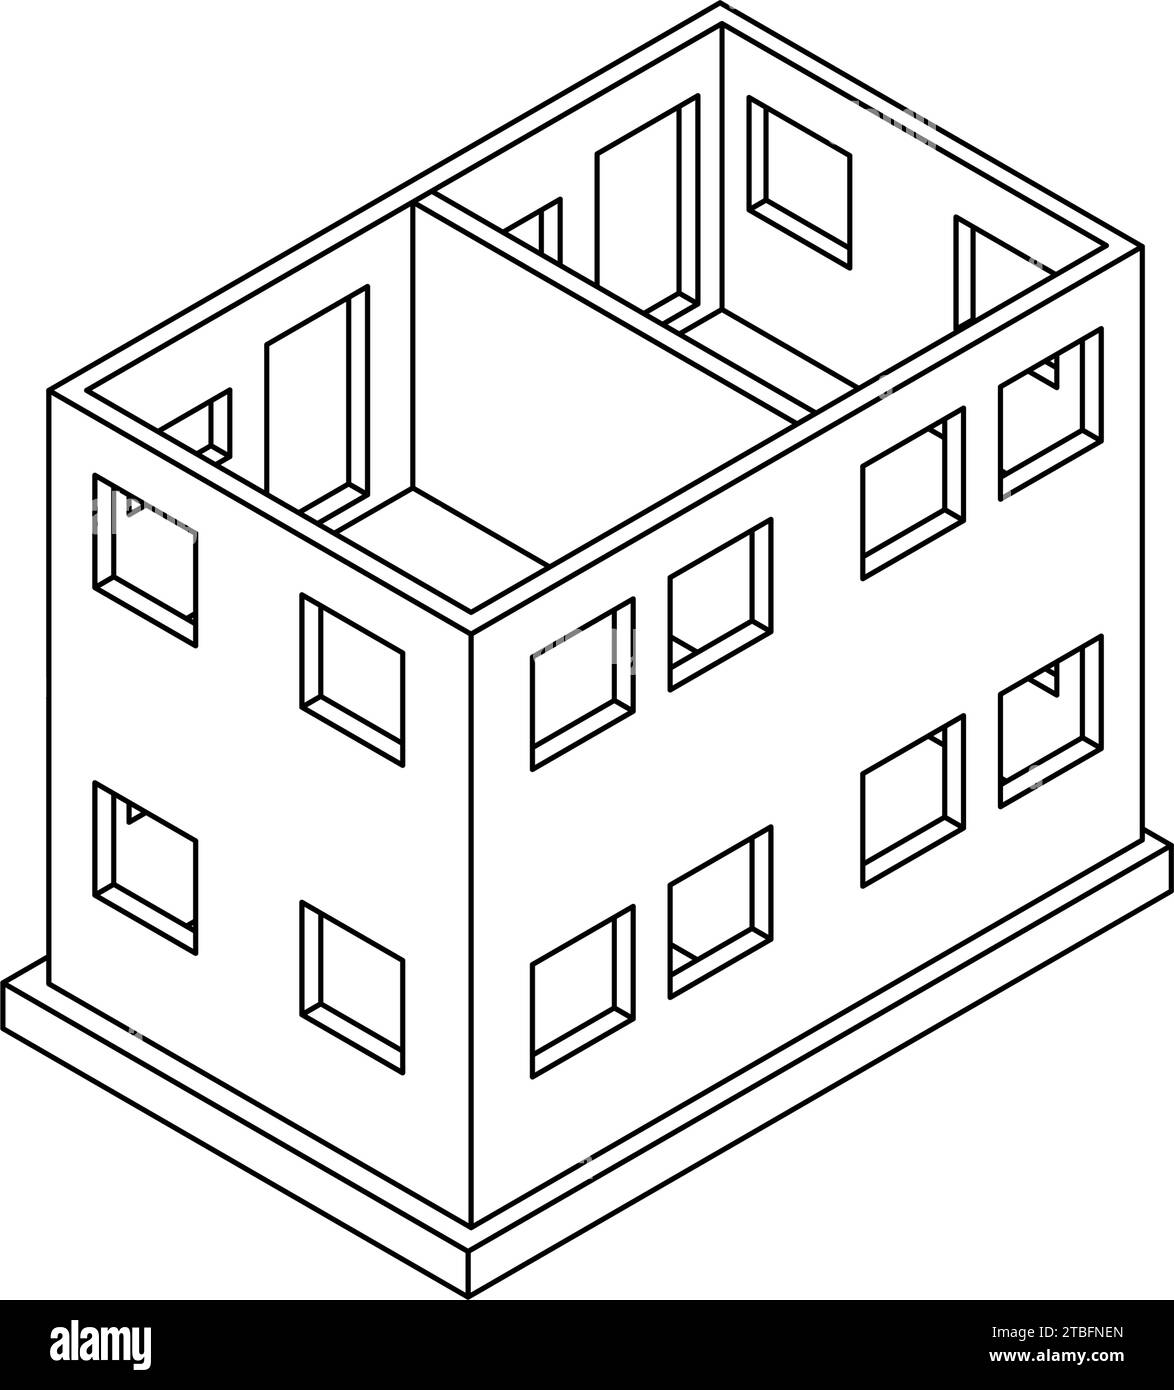 Stahlbetonwandkonstruktion (RC), isometrische Abbildungen von Gebäudestrukturen, Vektorillustration Stock Vektor